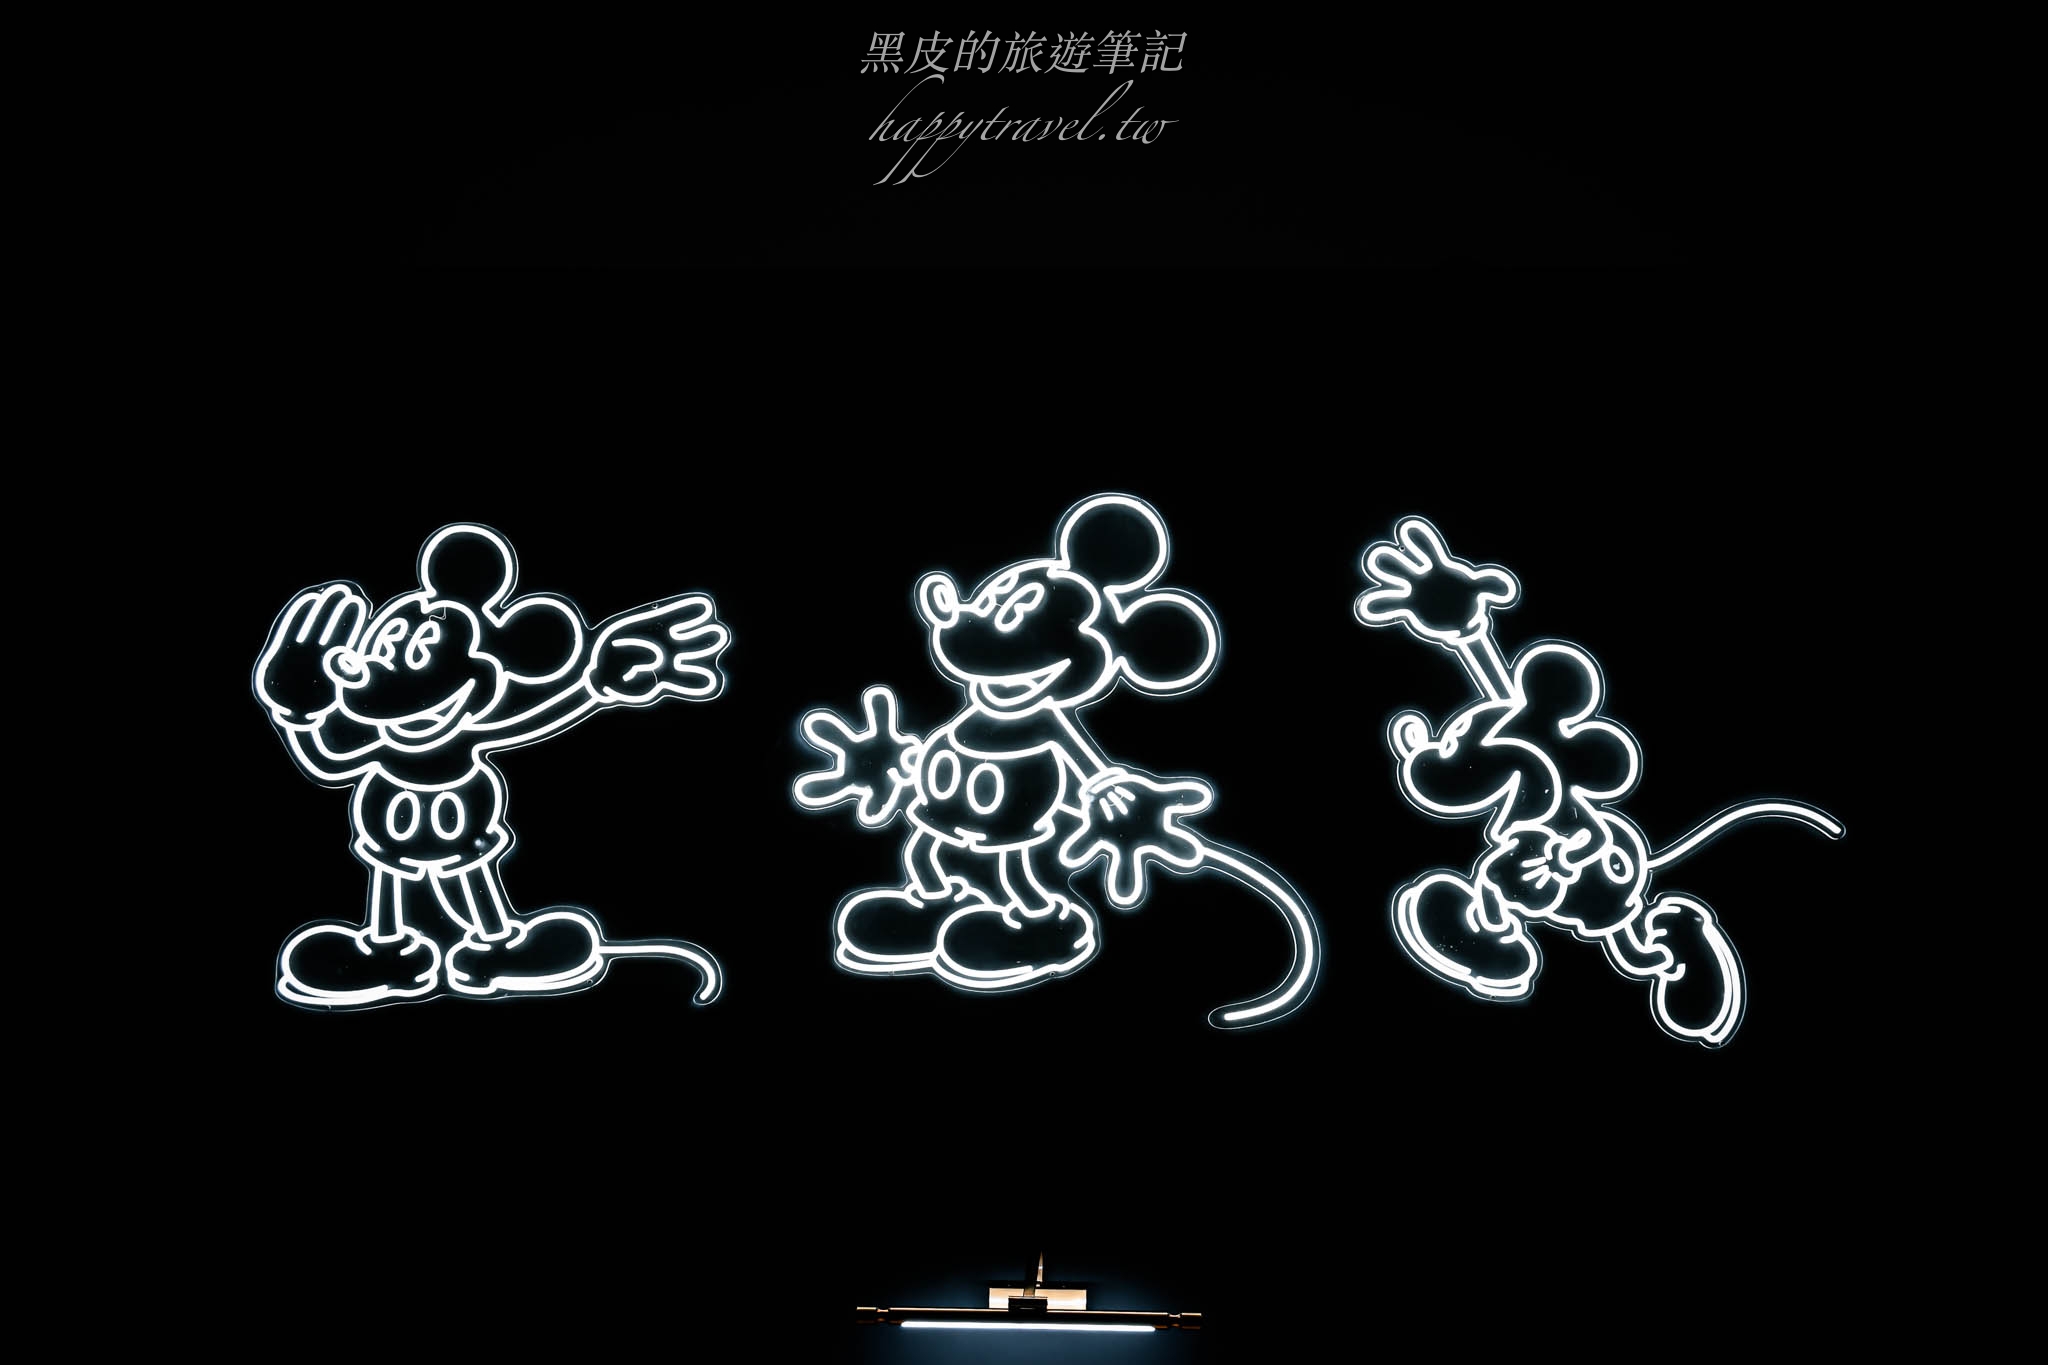 台北景點。迪士尼動畫展｜迪士尼動畫展來囉！在這裡可以看到許多兒時的卡通人物，還有米老鼠的動畫介紹，勾起了童年的記憶